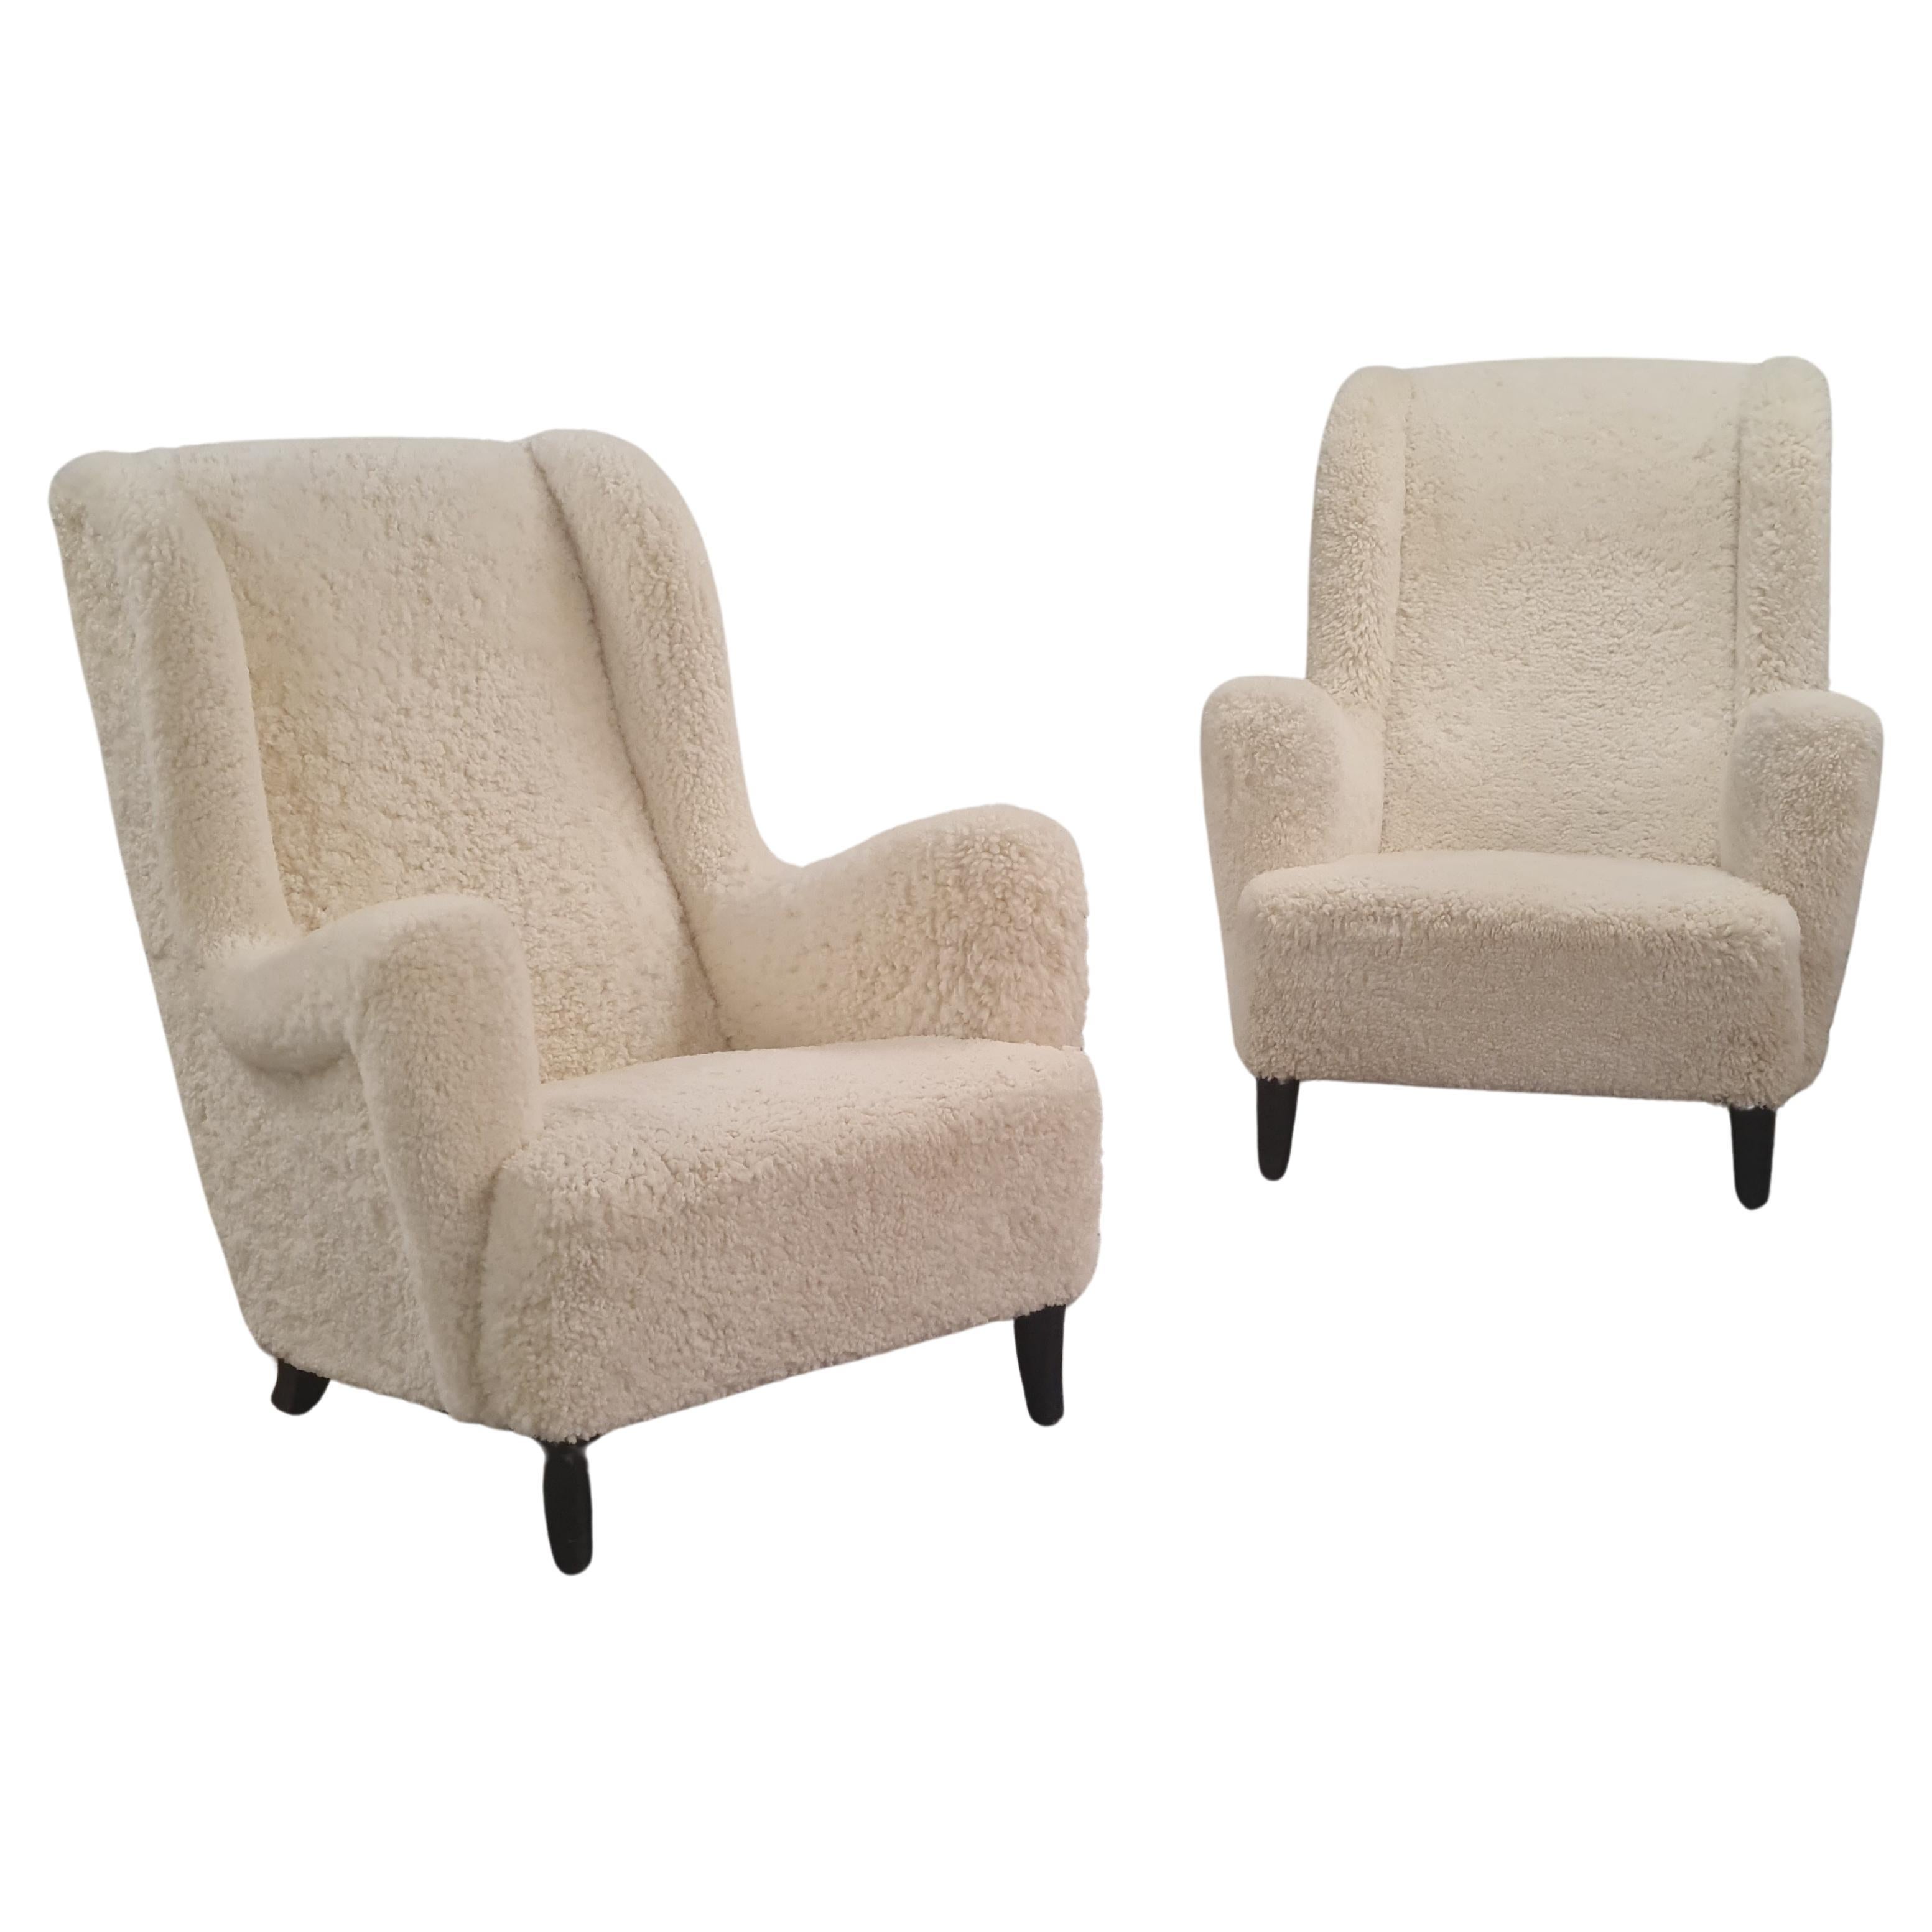 Une belle et grande paire de fauteuils des années 1940. Il s'agit d'une paire de chaises lourdes mais incroyablement confortables. Ils sont si confortables que la décision de les mettre en vente n'a pas été facile à prendre. 
Bien qu'elles datent